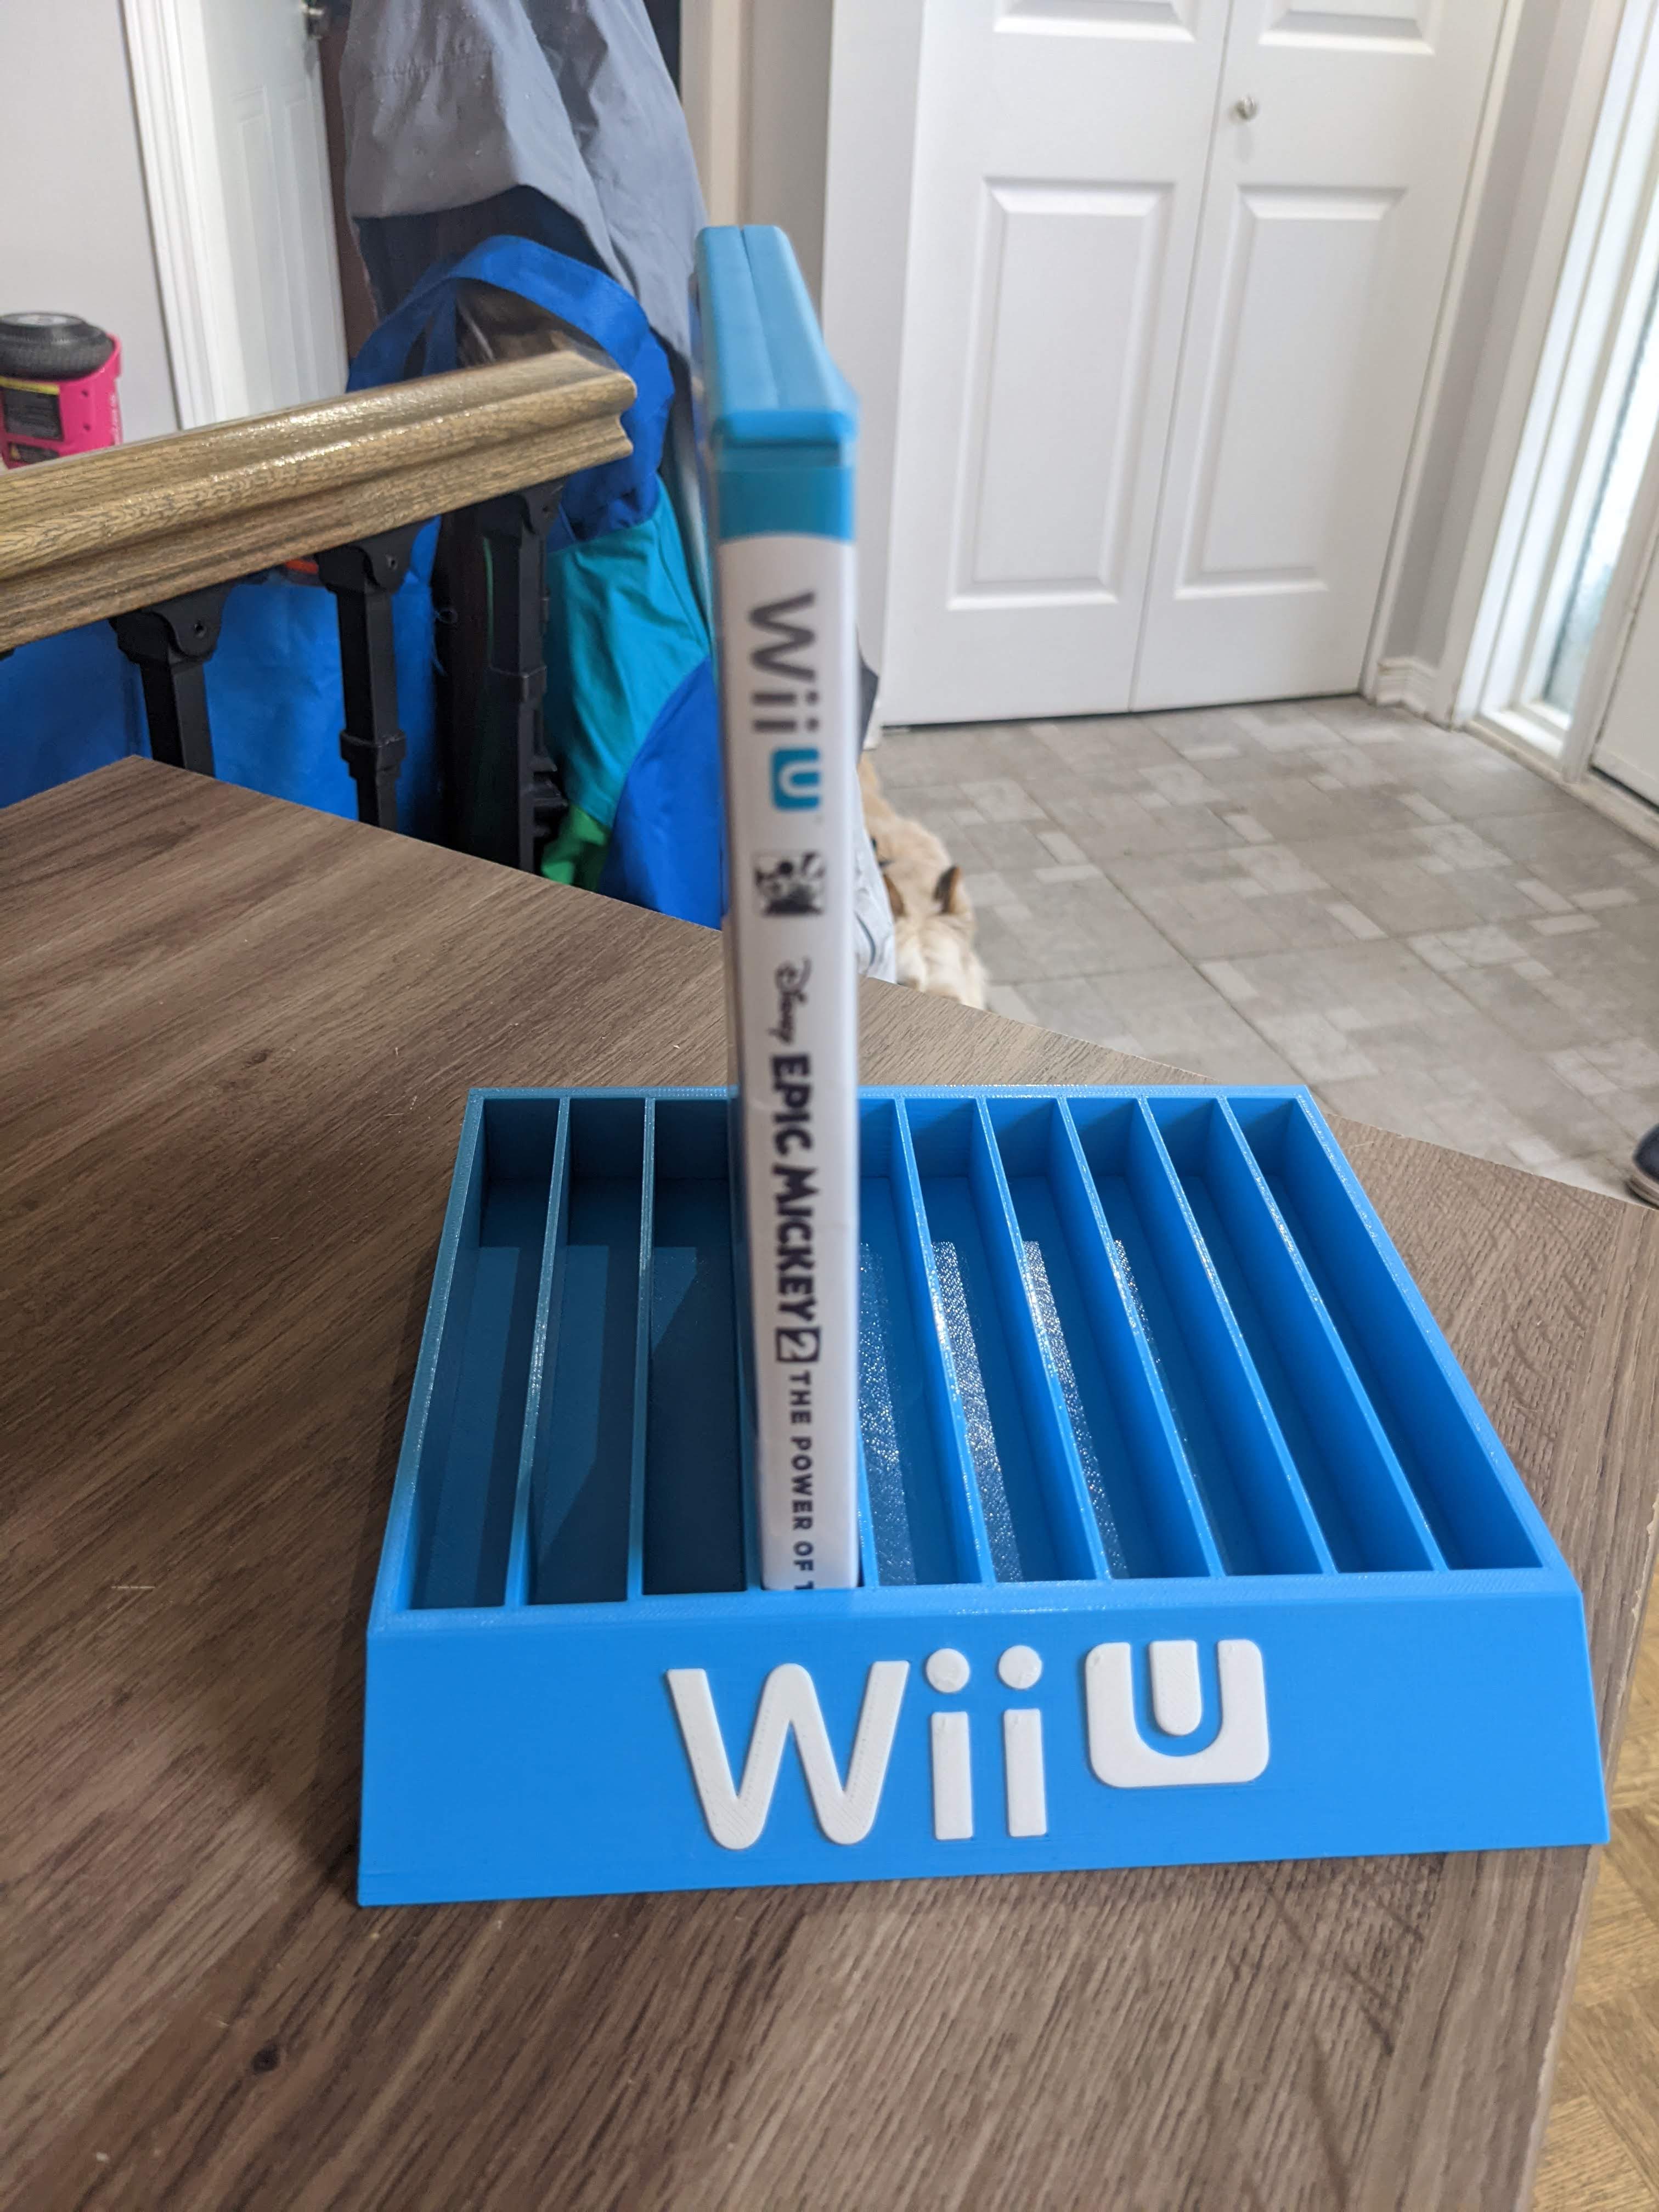 Nintendo Wii U Case Holder